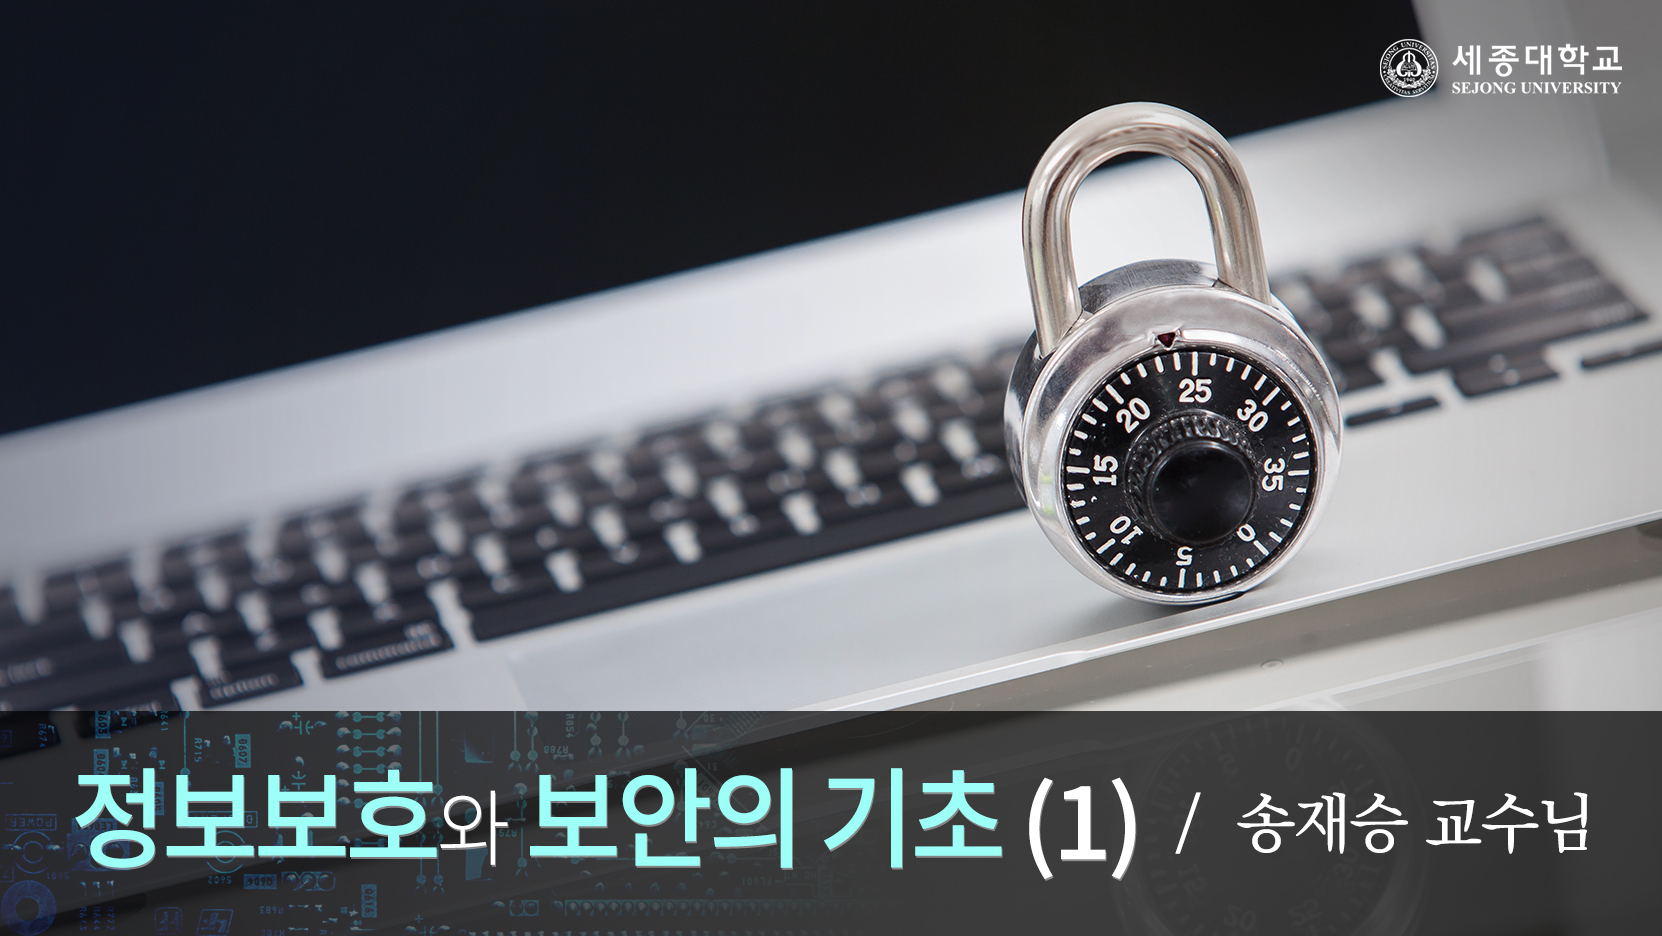 정보보호와 보안의 기초Ⅰ 개강일 2016-09-12 종강일 2016-11-06 강좌상태 종료